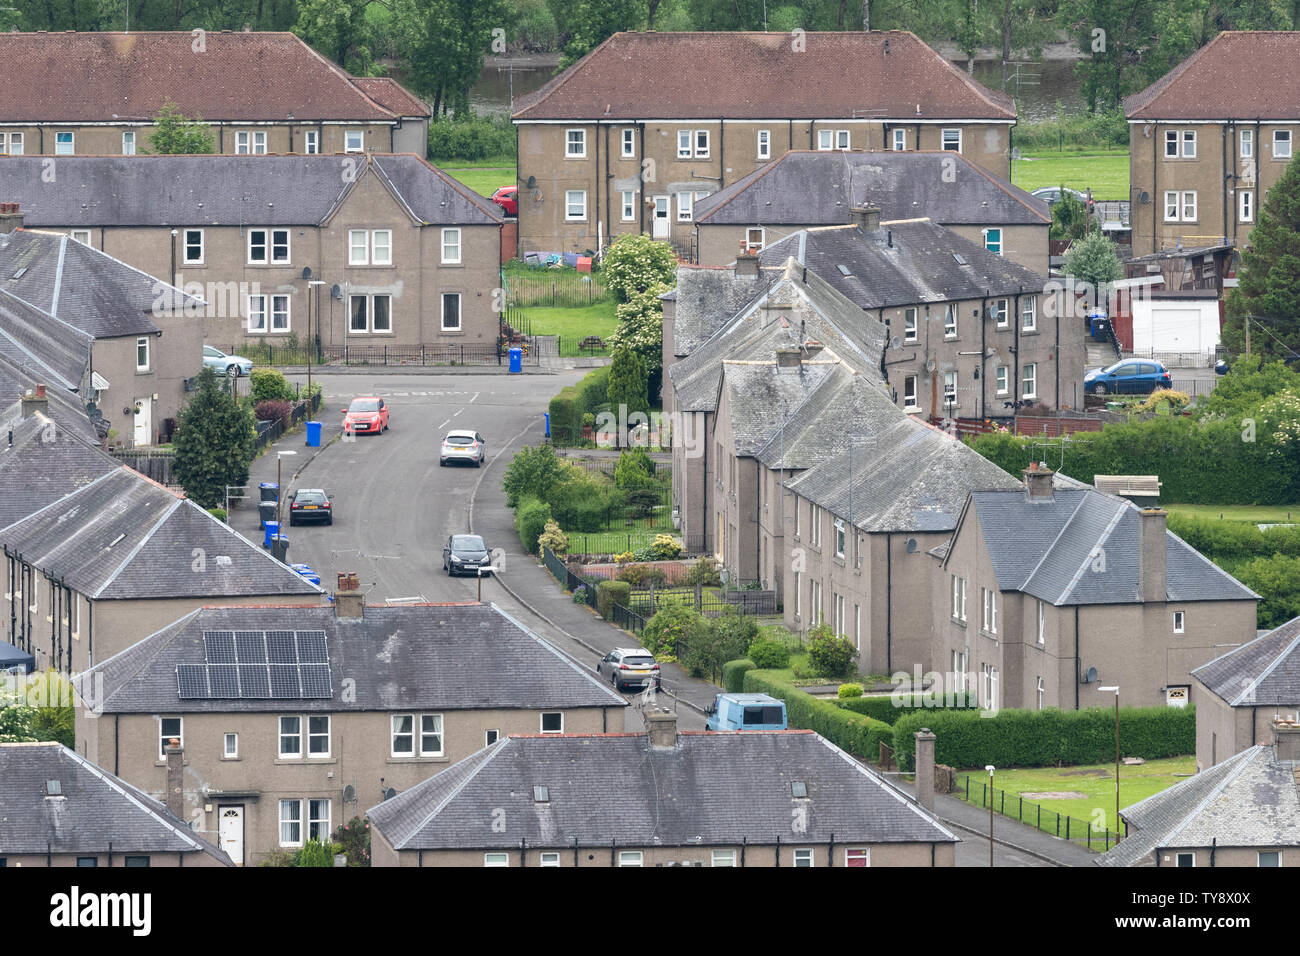 Raploch housing scheme, Stirling, Scotland, UK Stock Photo